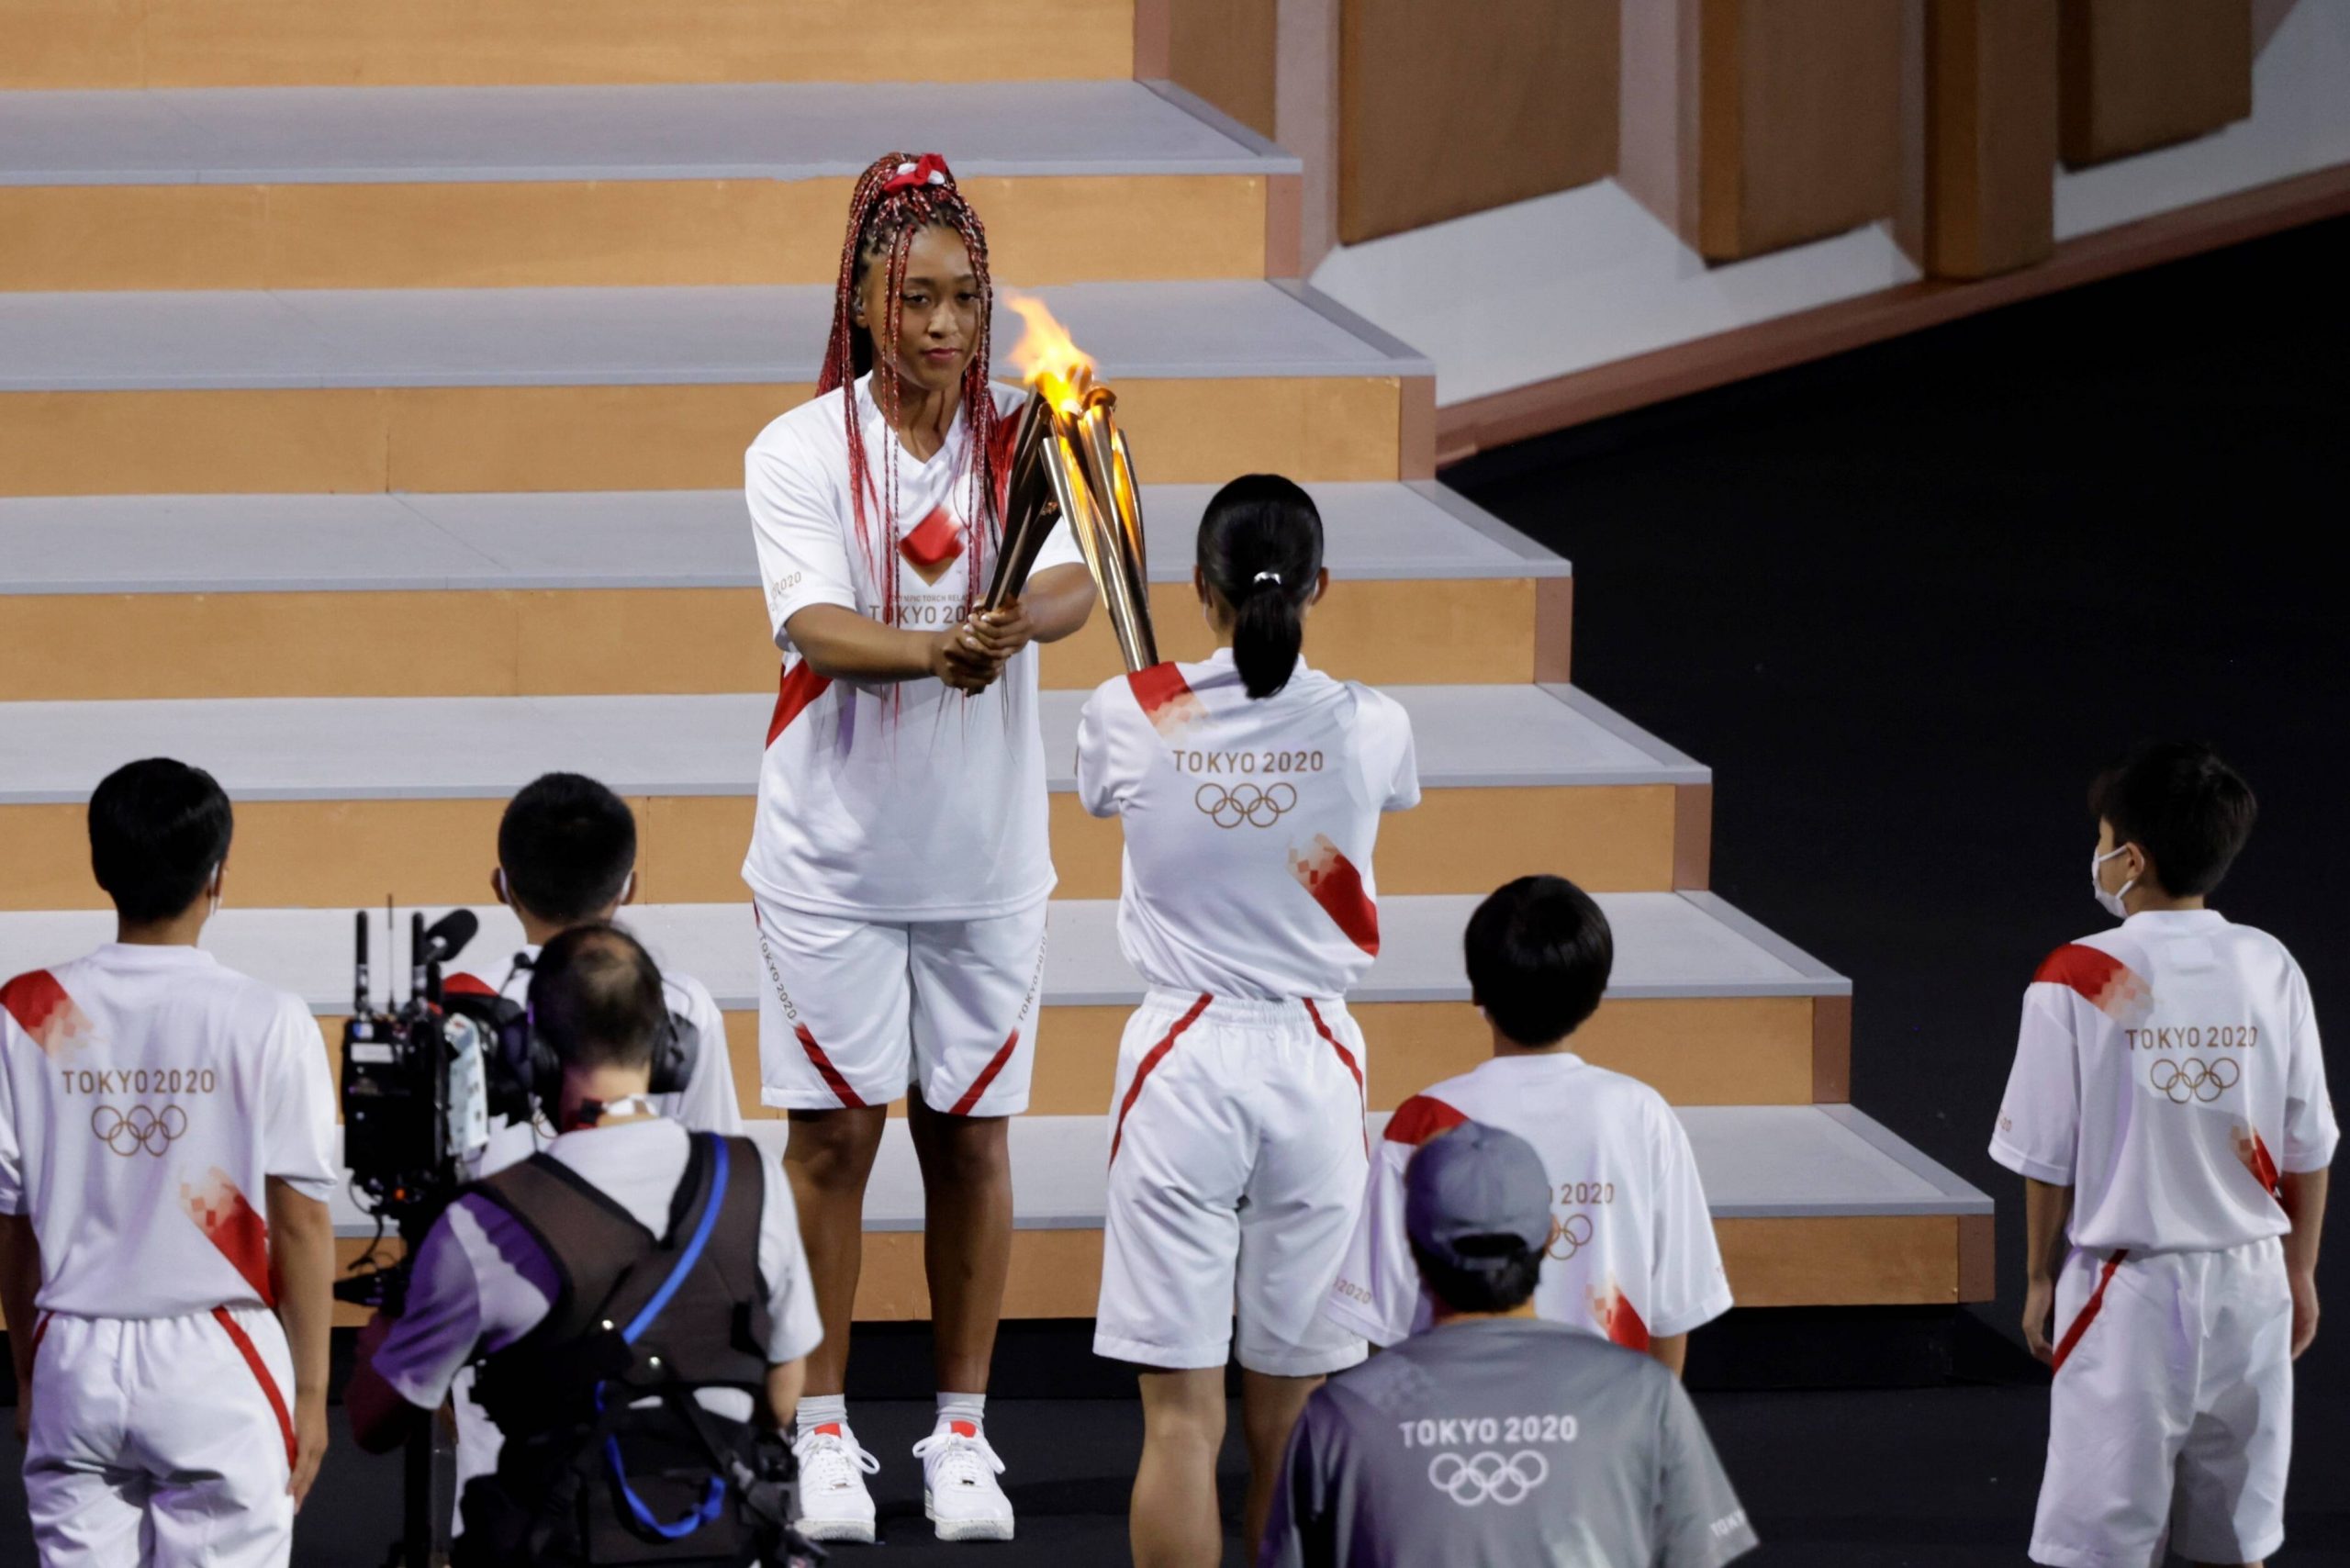 Naomi Osaka trat bei der Eröffnungsfeier als letzte Fackelträgerin auf und entzündete das olympische Feuer.